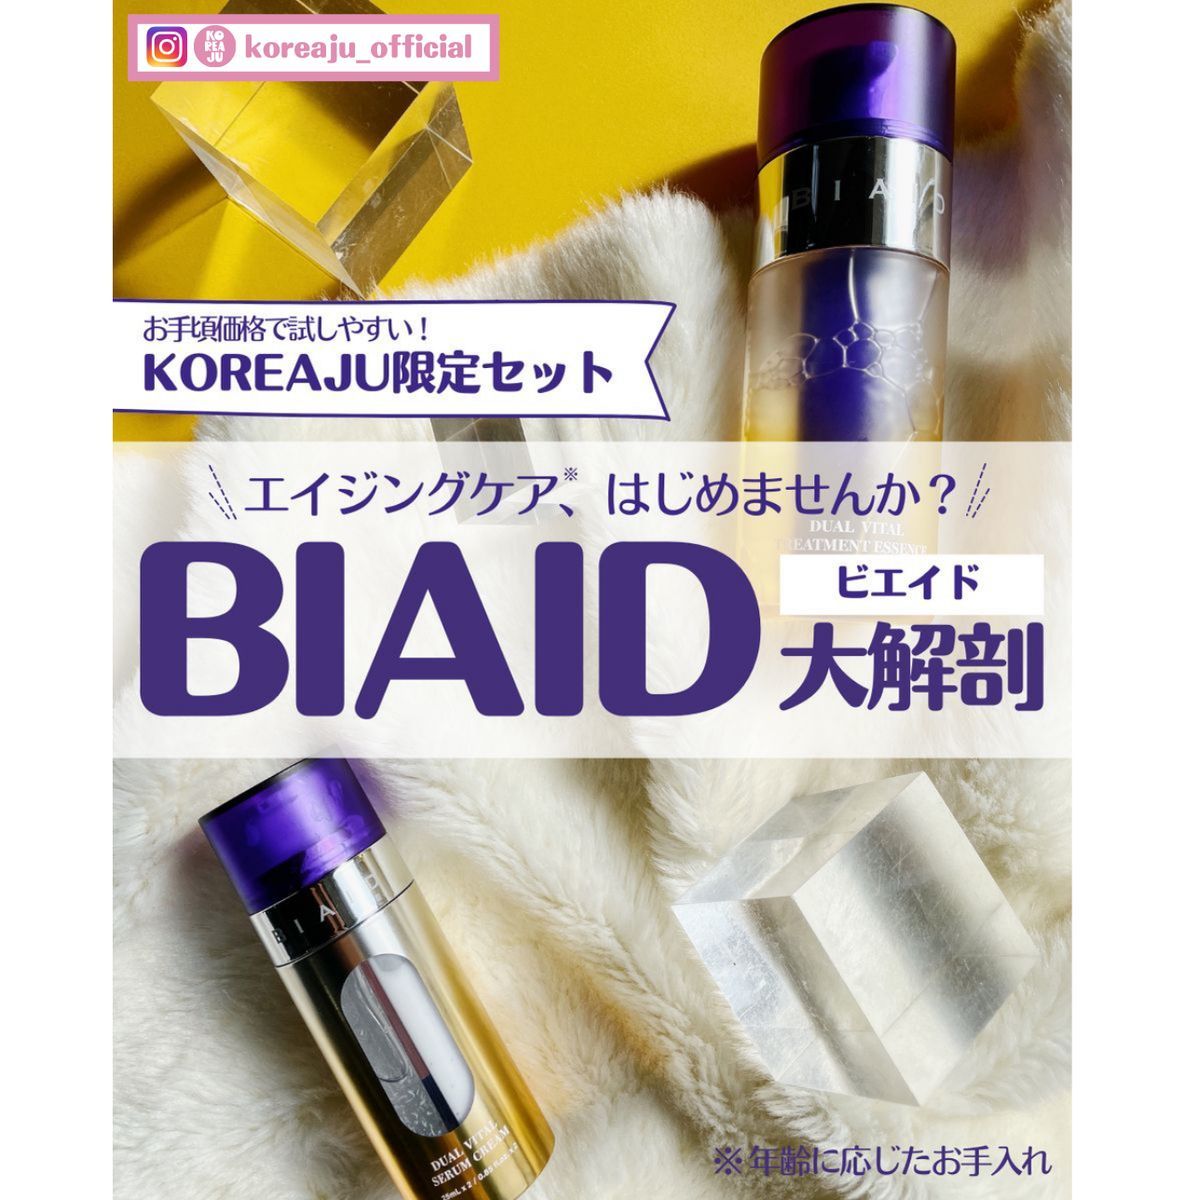 BIAID デュアルバイタルセラムクリーム (韓国コスメ) | ビエイド(BIAID